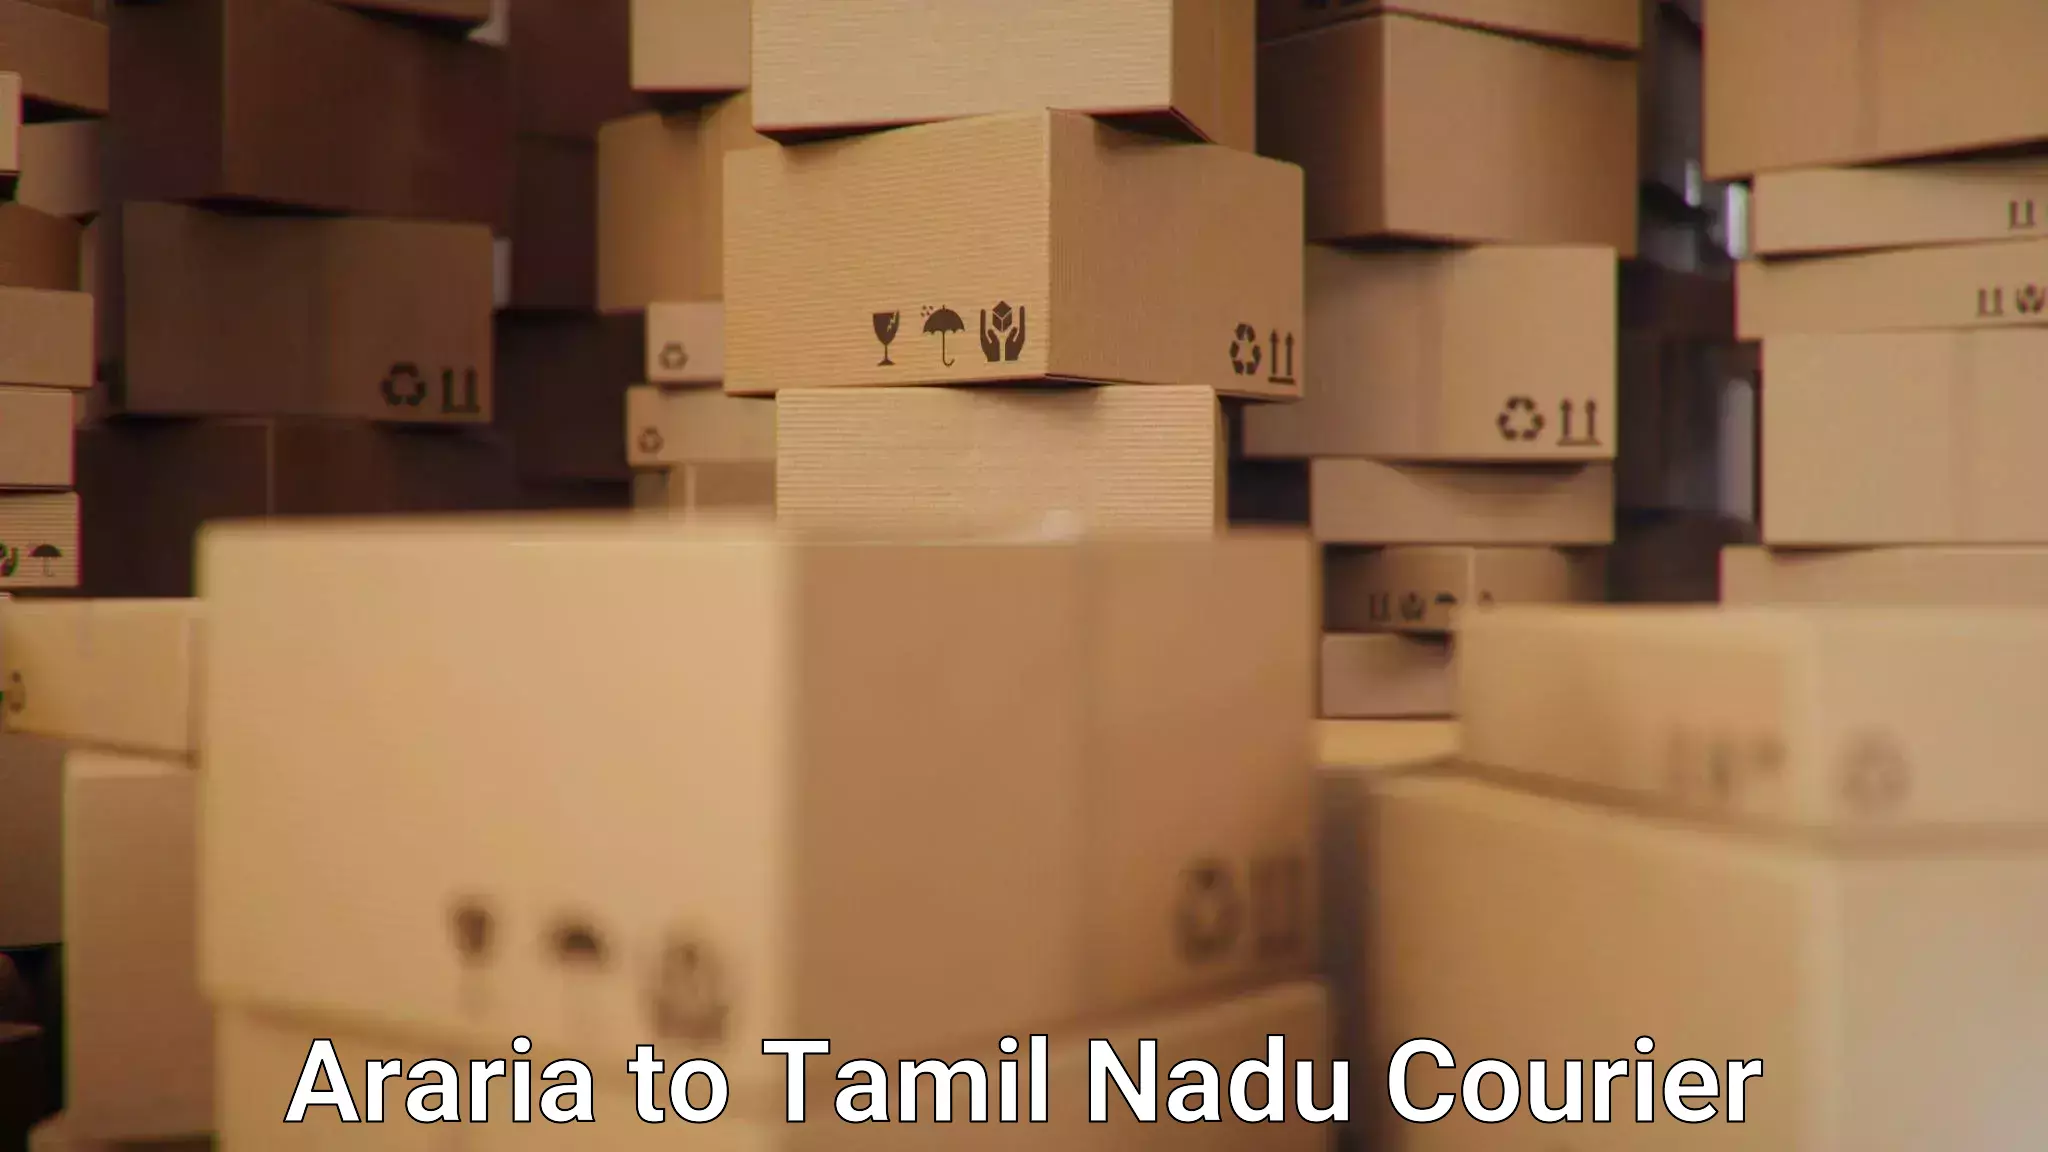 Reliable logistics providers Araria to Mayiladuthurai